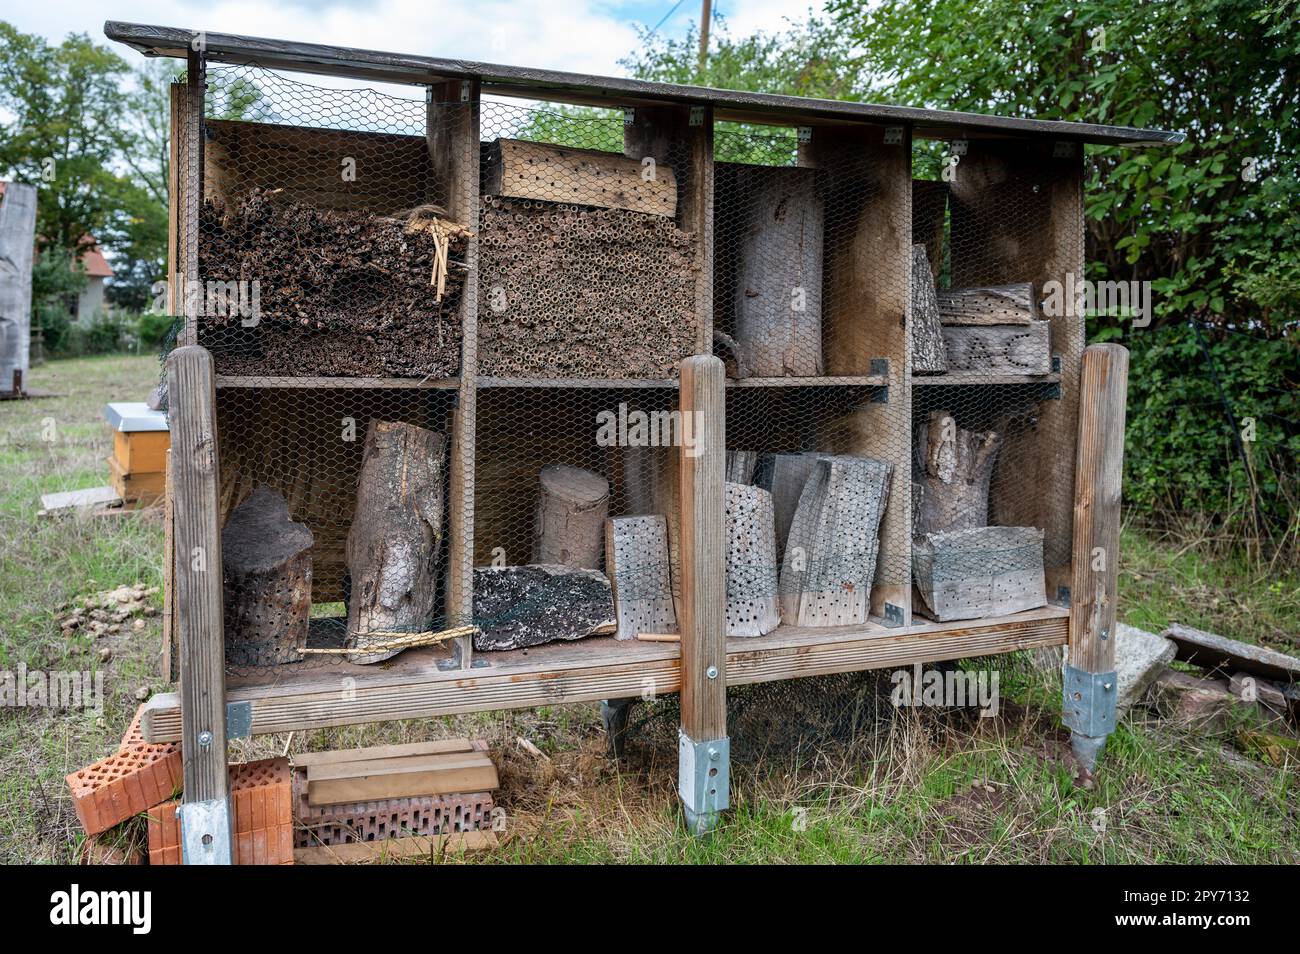 Apiary bee home hotel, insetto hotel agricolo protezione ambientale in legno in una fattoria Foto Stock